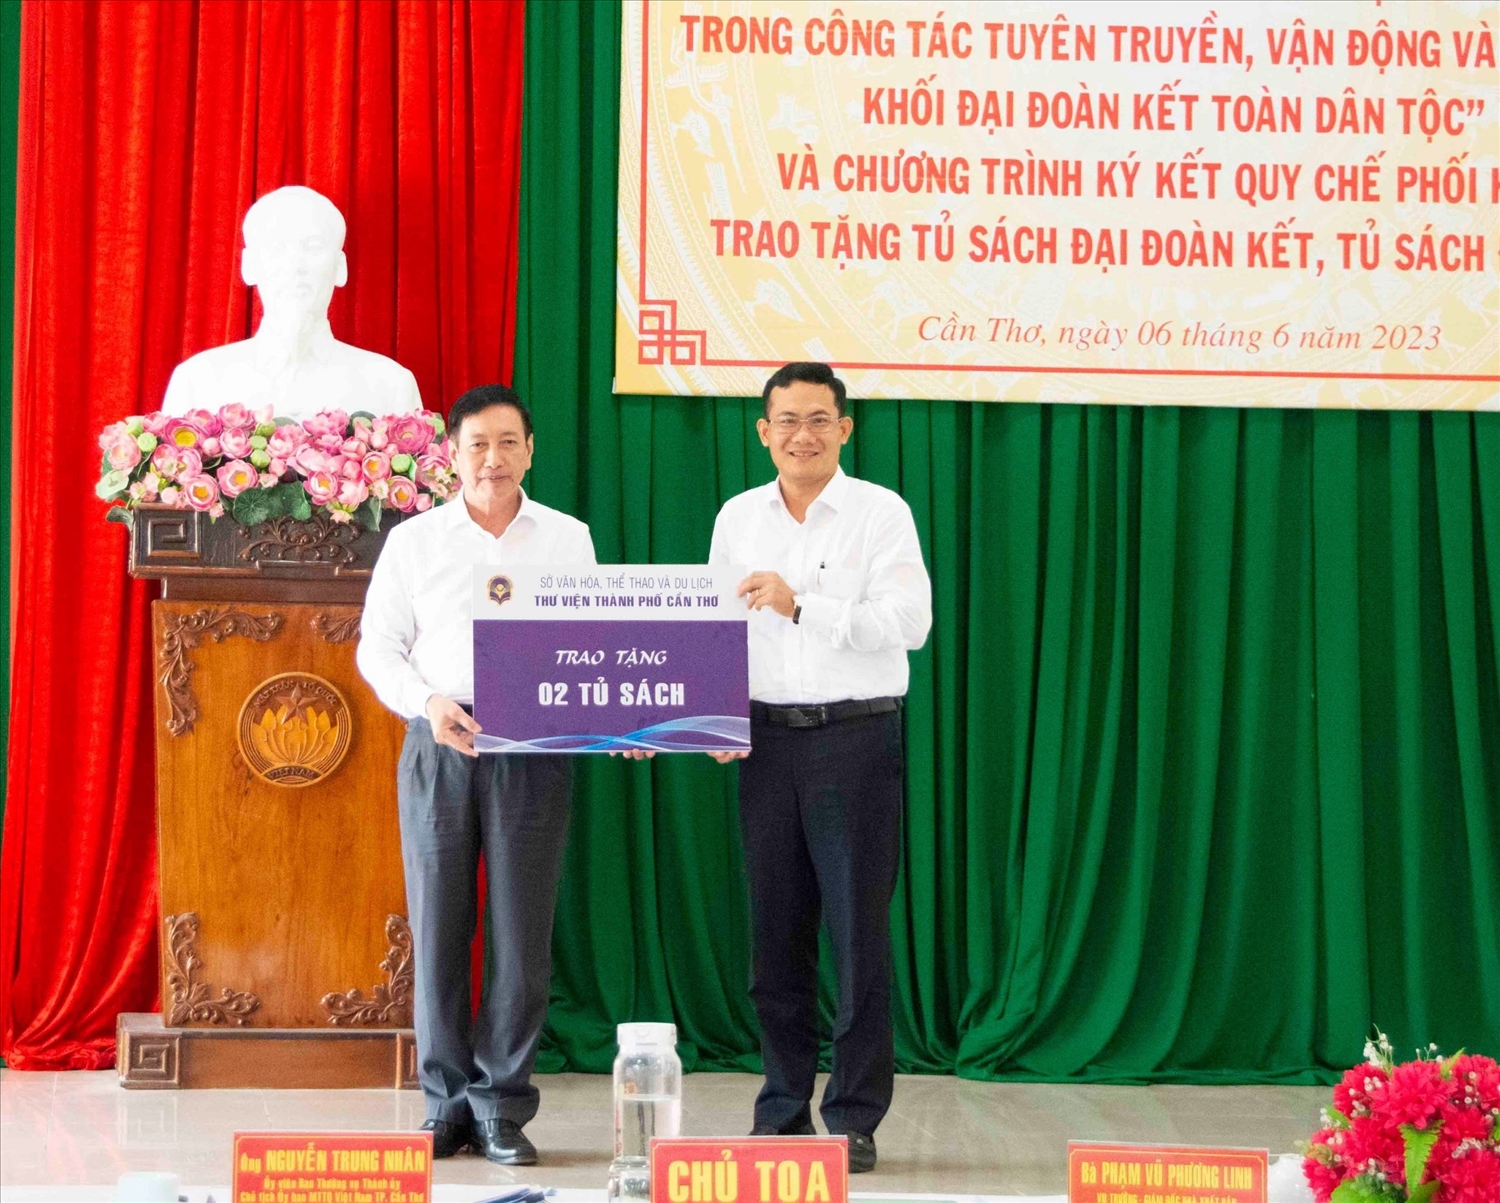 ông Nguyễn Minh Tuấn - Giám đốc Sở Văn hóa, Thể thao và Du lịch TP Cần Thơ trao bảng tượng trưng tặng hai tủ gỗ để trưng bày sách 